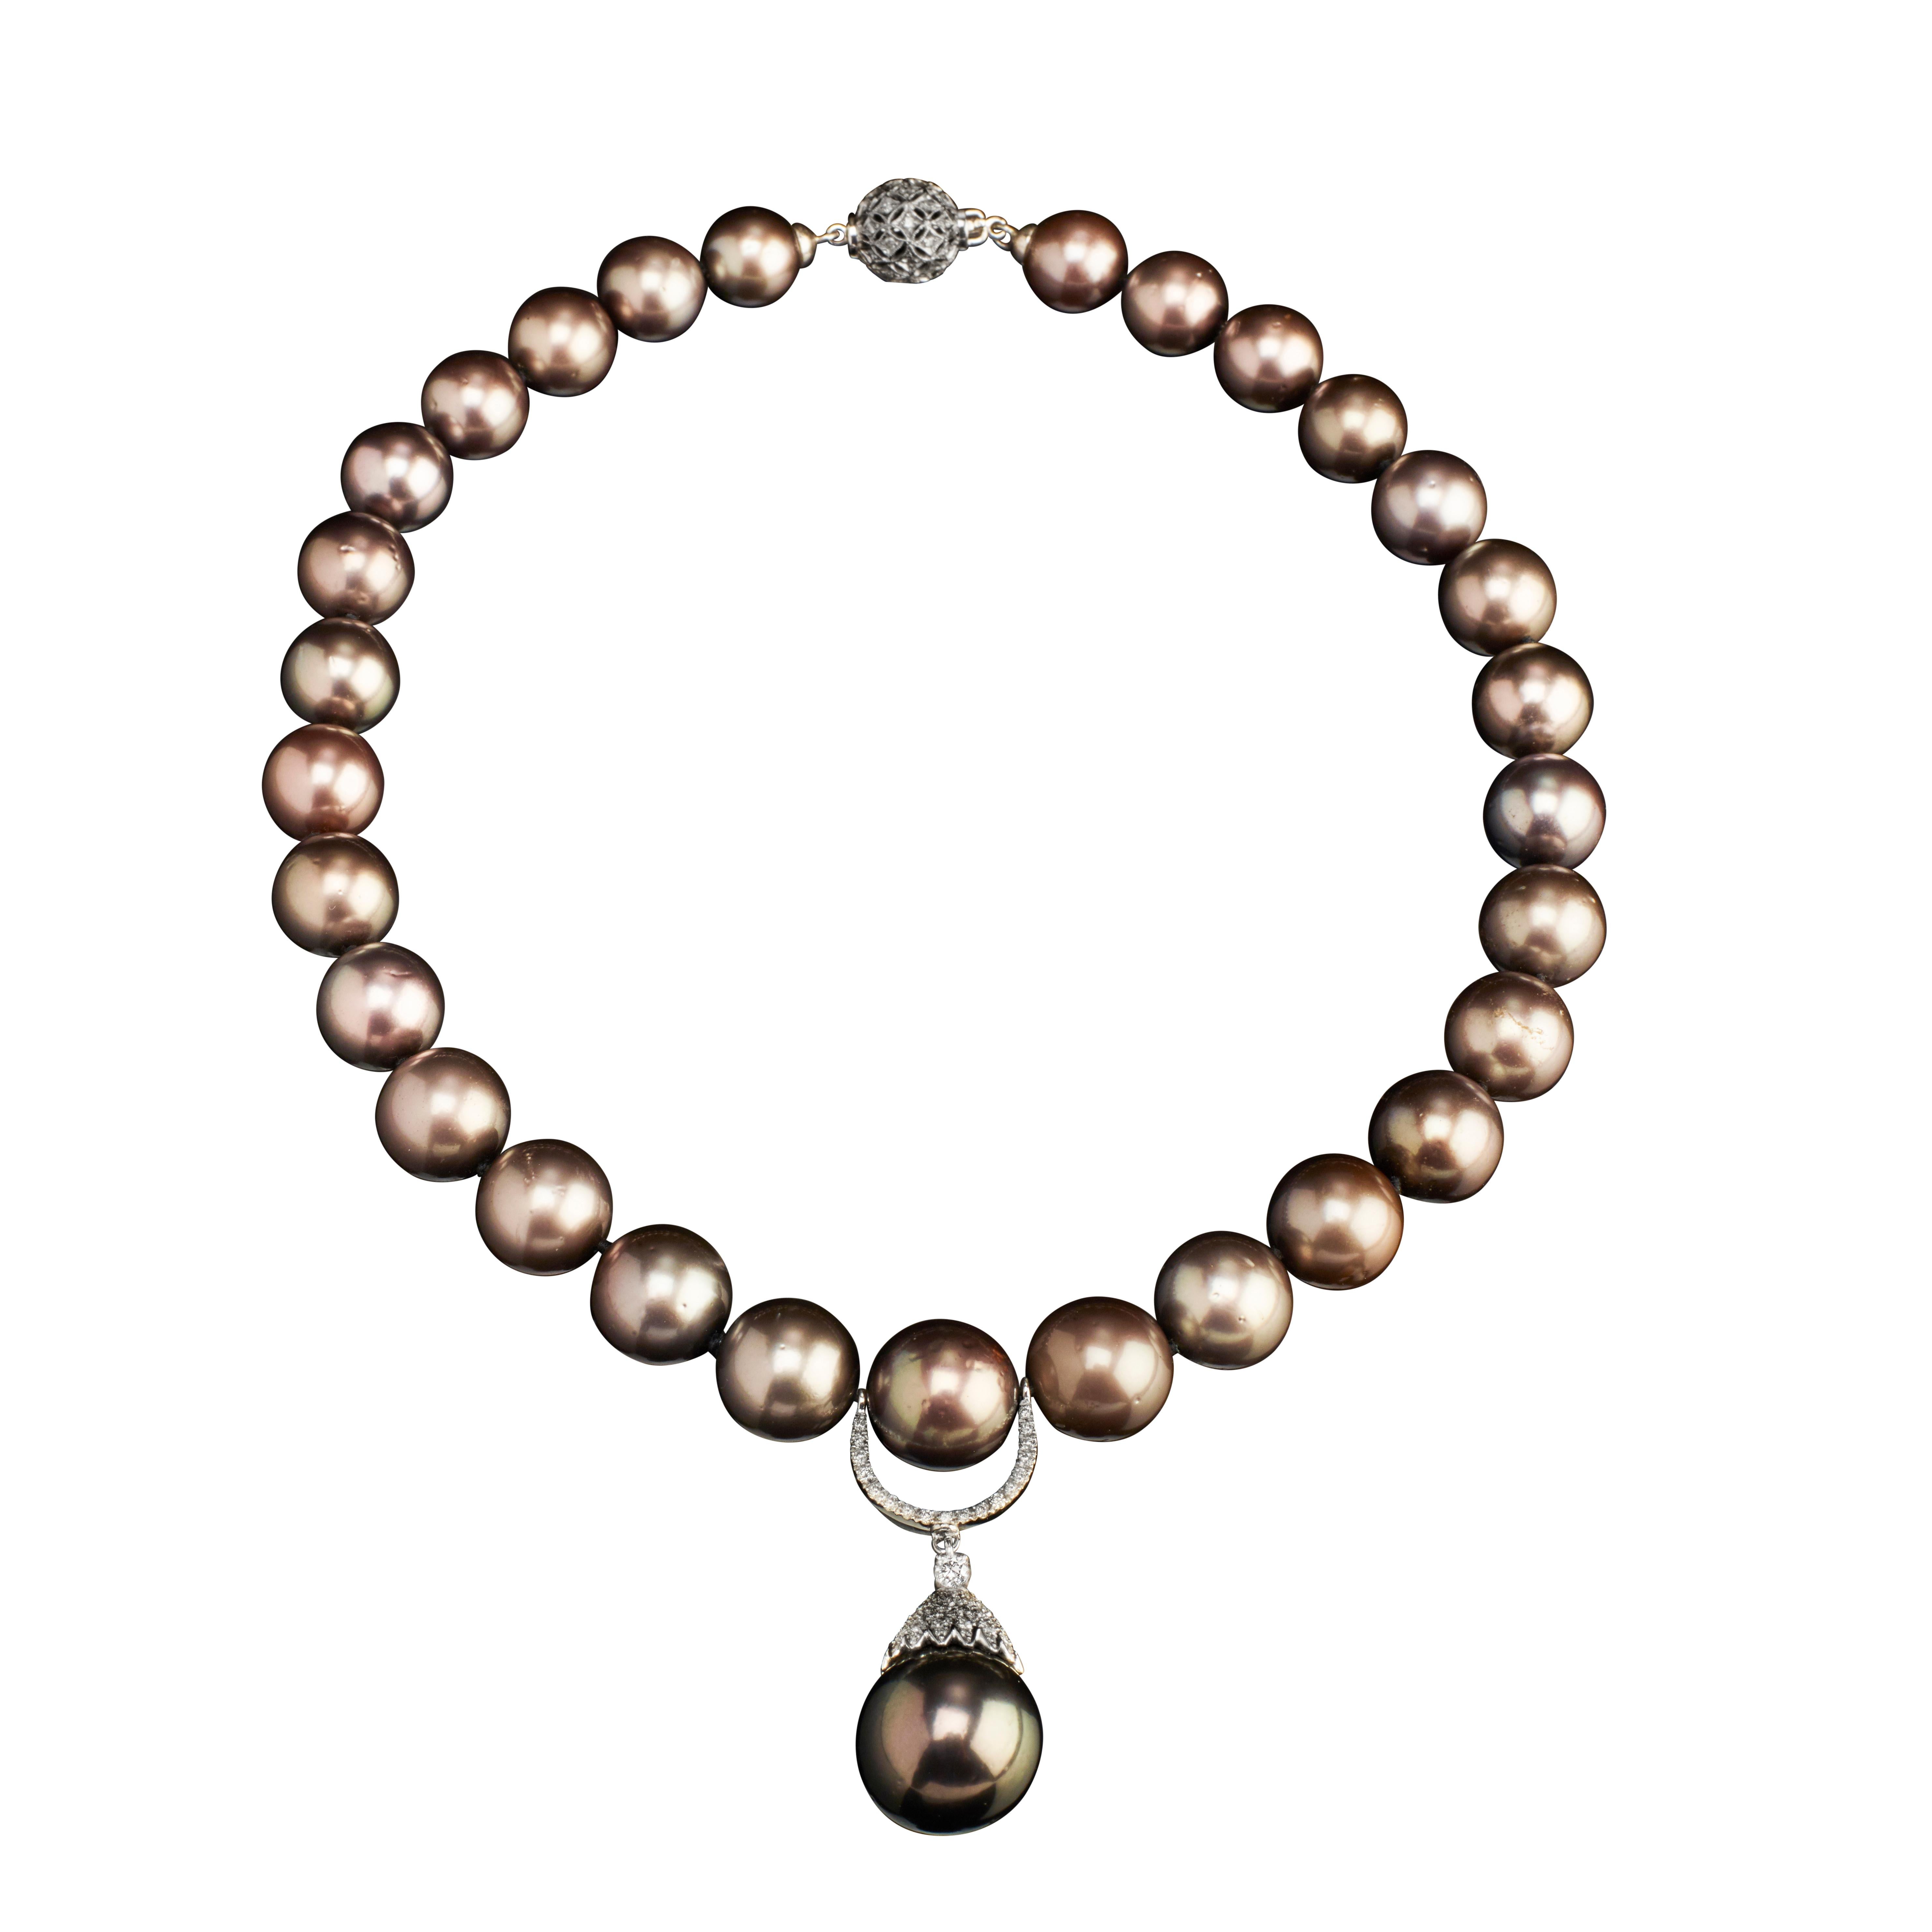 Brilliant Cut Veschetti 18 Karat White Gold Tahiti Pearls Diamond Necklace For Sale